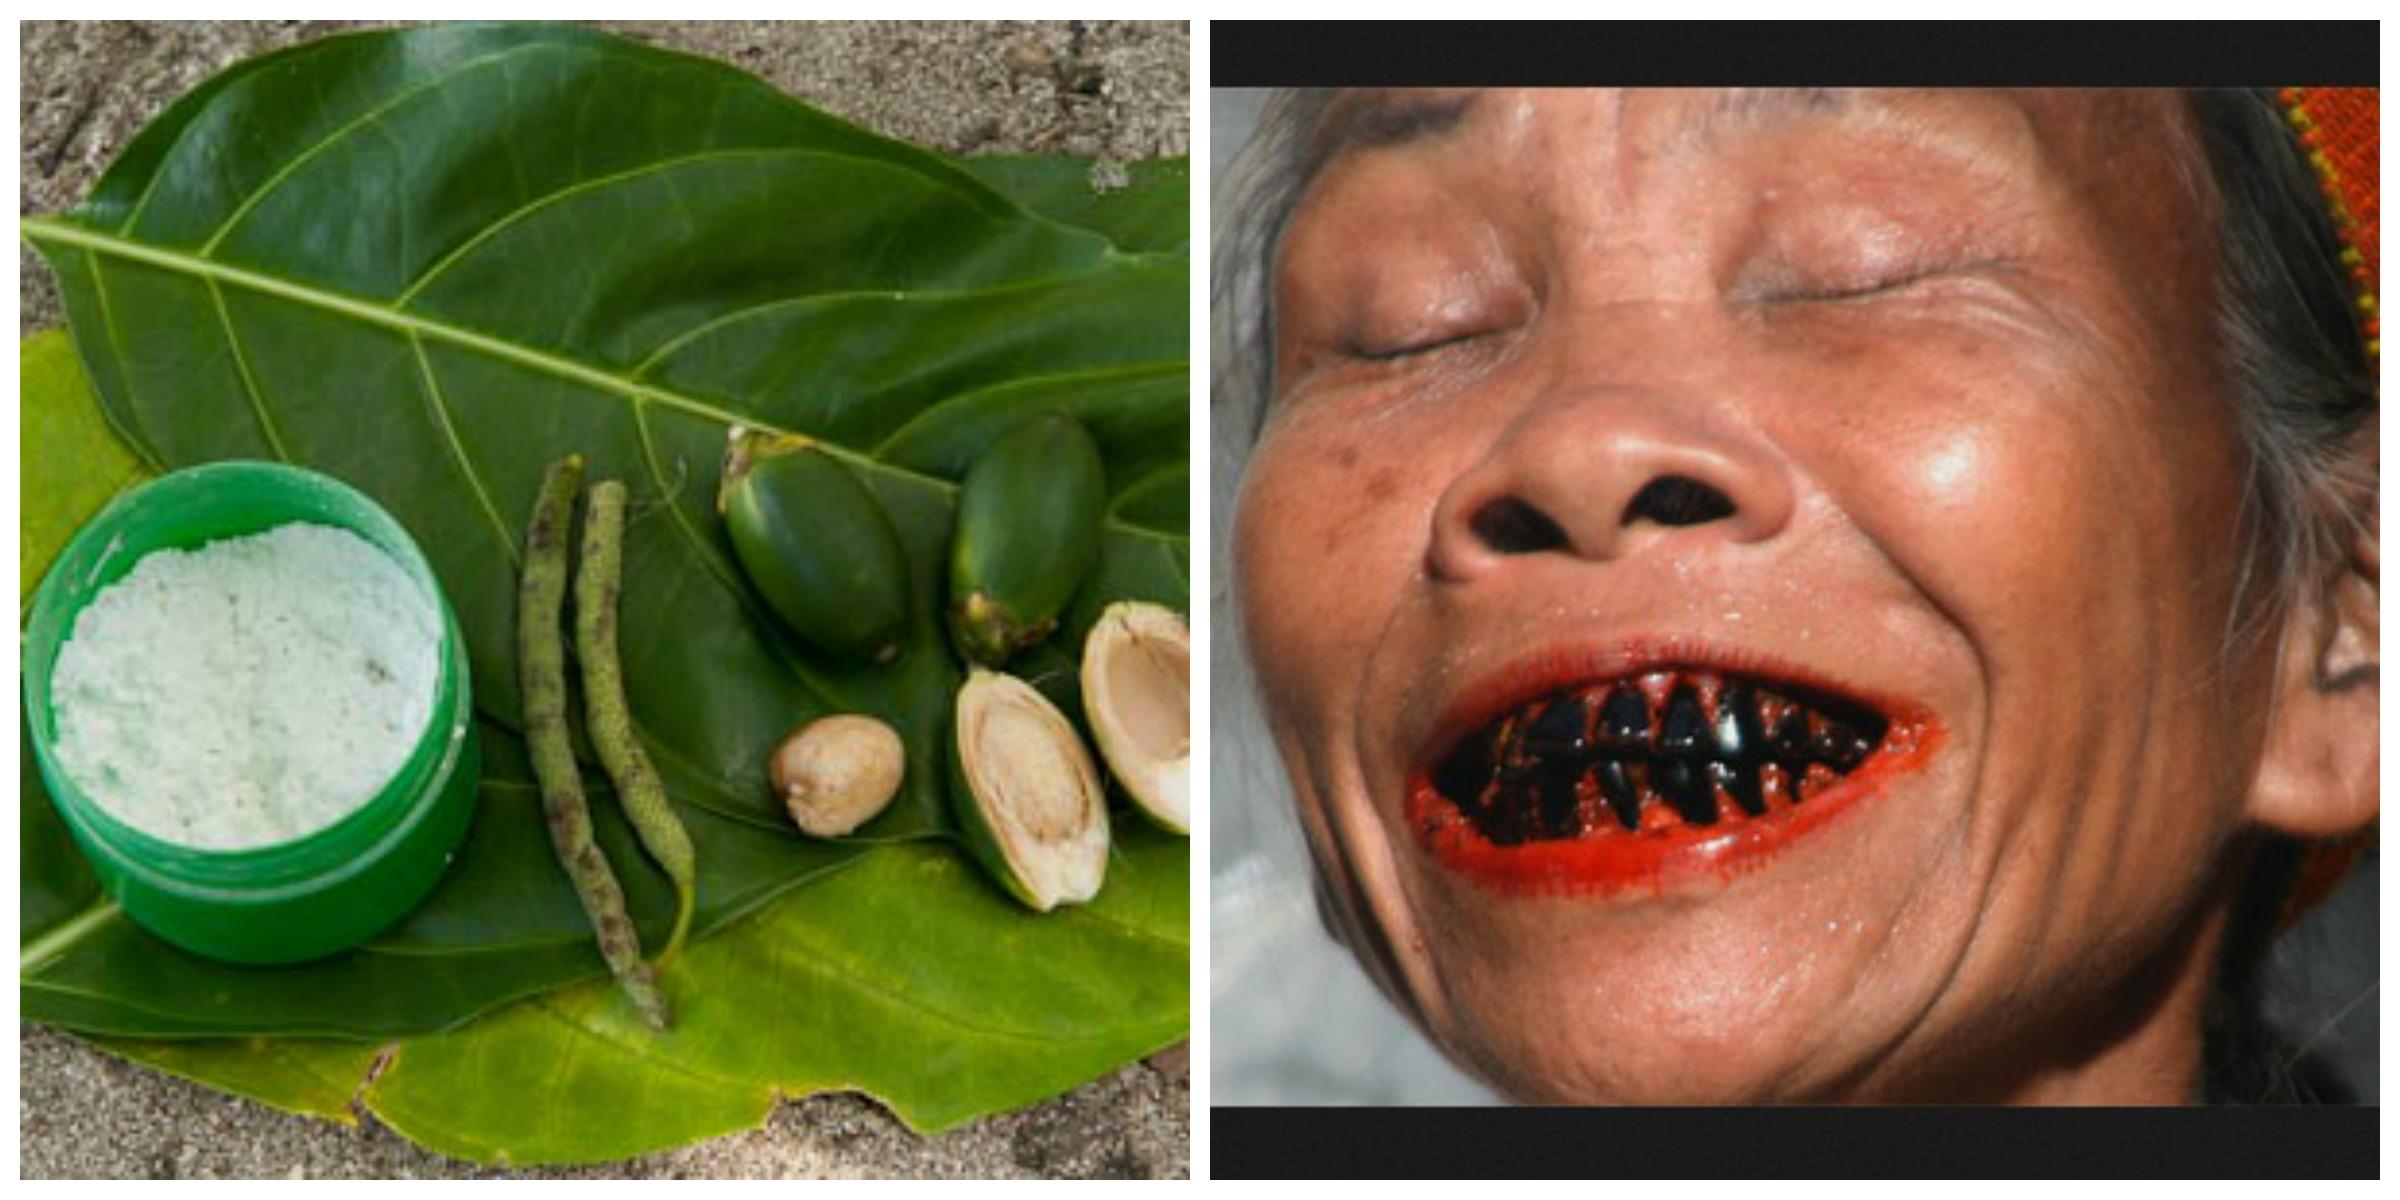 槟榔成瘾者自述:为了戒槟榔,把最恶心的口腔癌图片当桌面